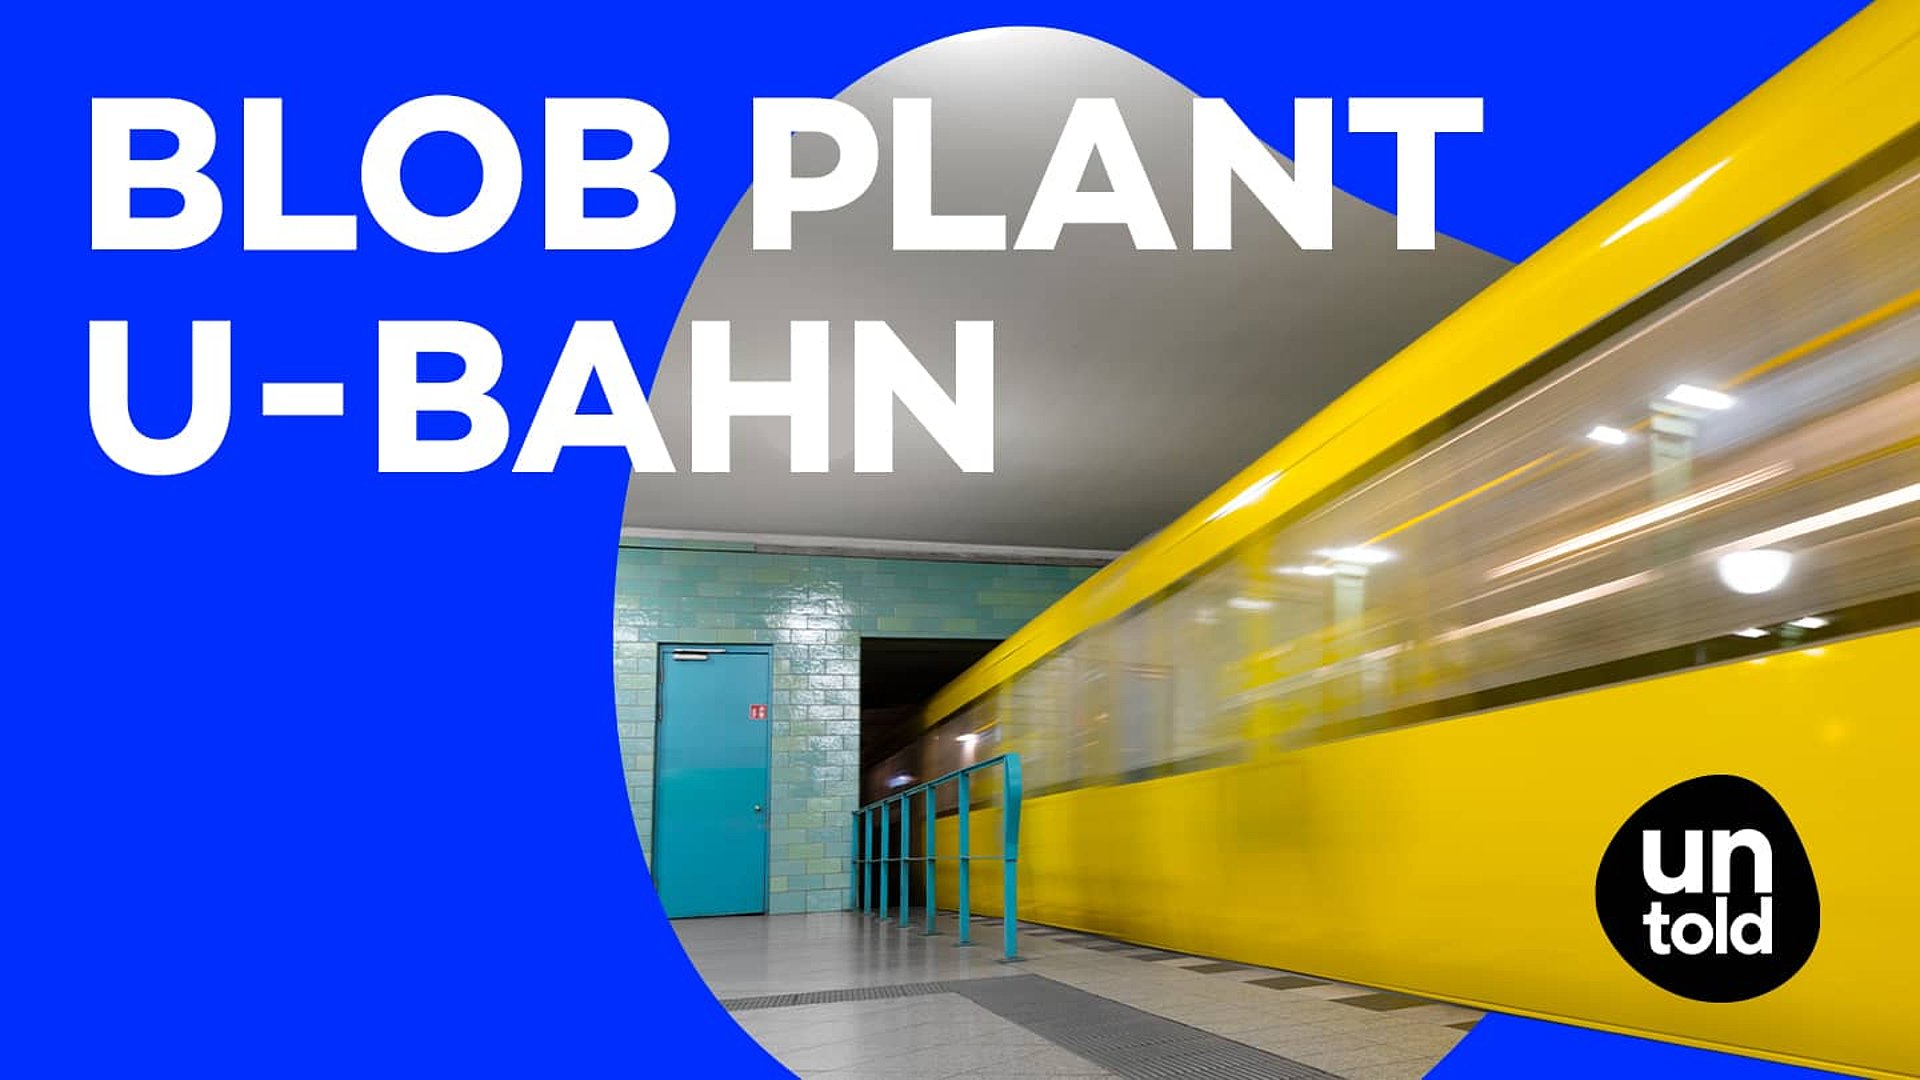 Teasergrafik mit blauem Hintergrund, Headline "Blob plant U-Bahn" und einer Blase, in der eine U-Bahn durch eine Station fährt